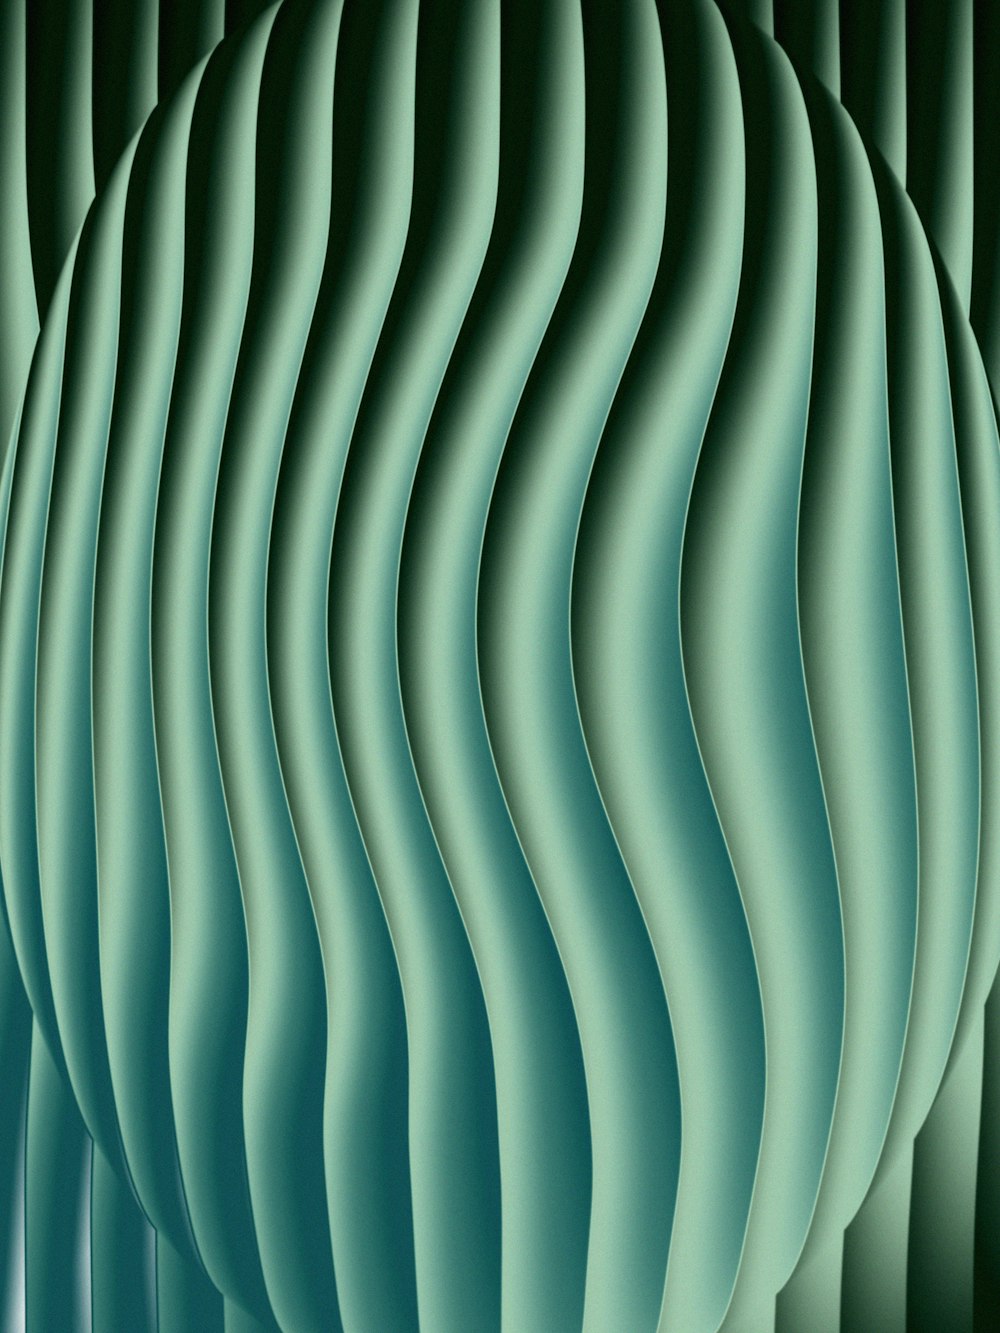 uno sfondo astratto verde con linee ondulate